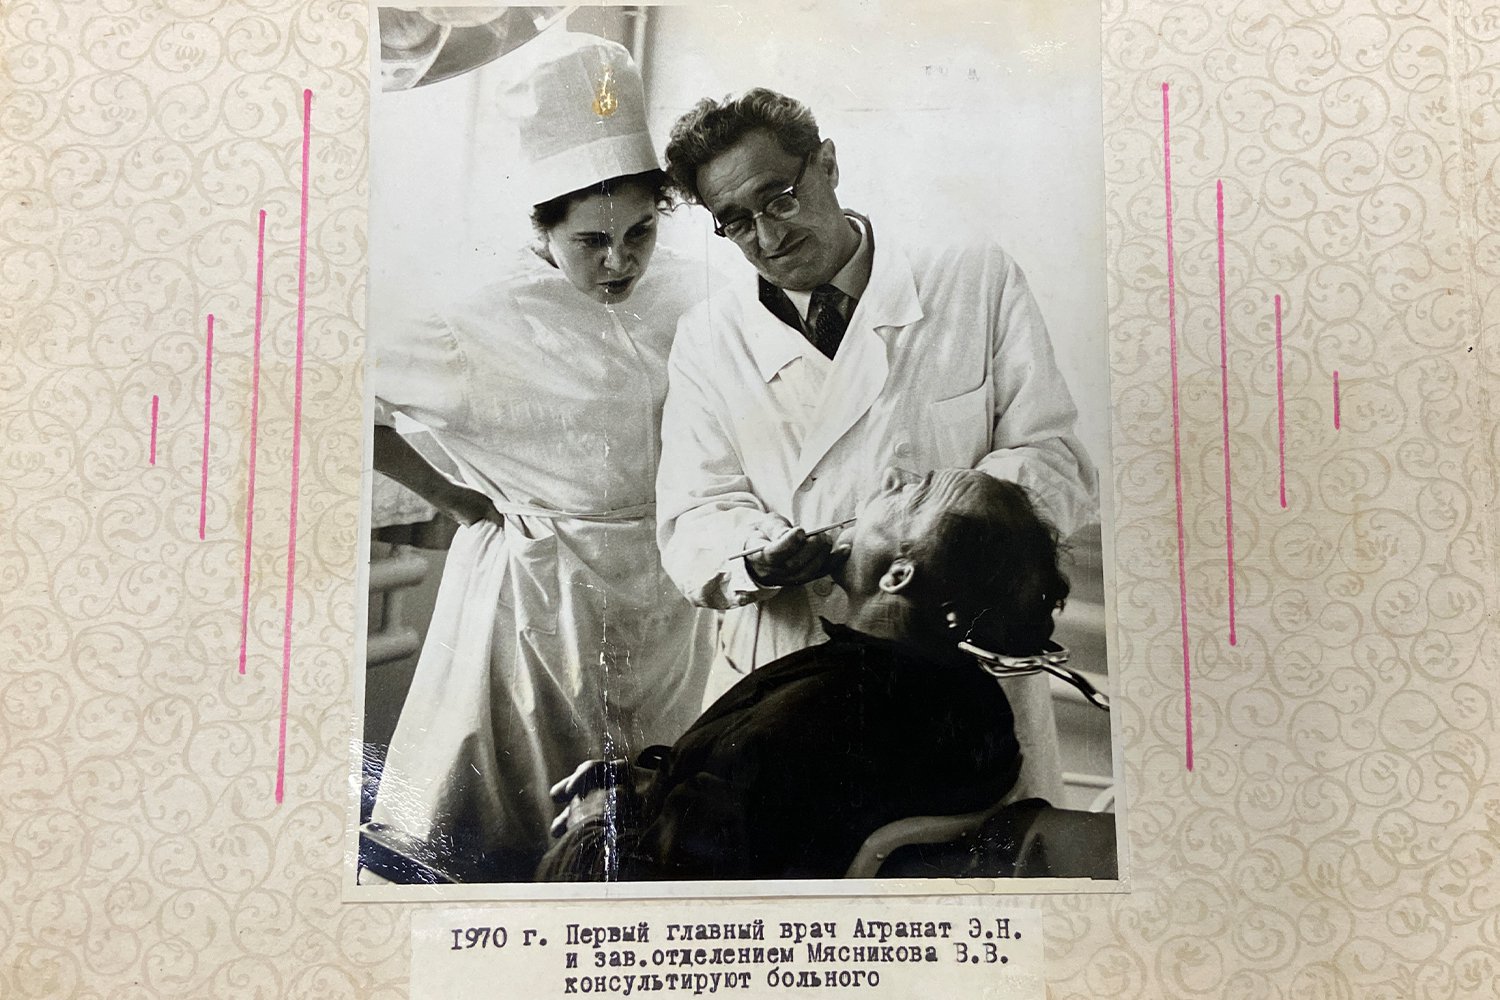 Стоматологической поликлинике ЦРБ — 55 лет